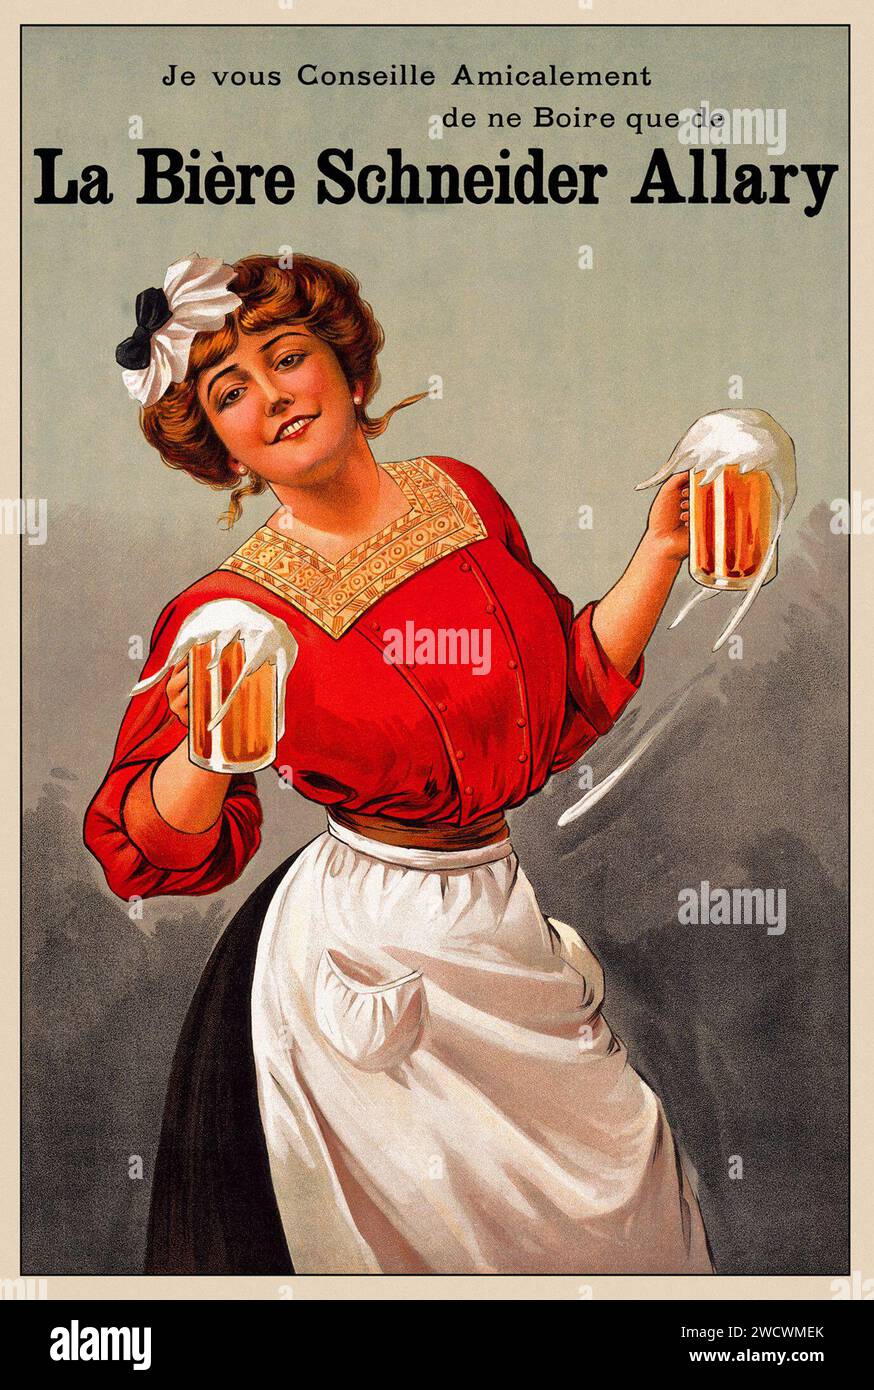 La Biere Schneider Allary - vintage poster - beer advertisement - unknown artist, c 1900 Stock Photo